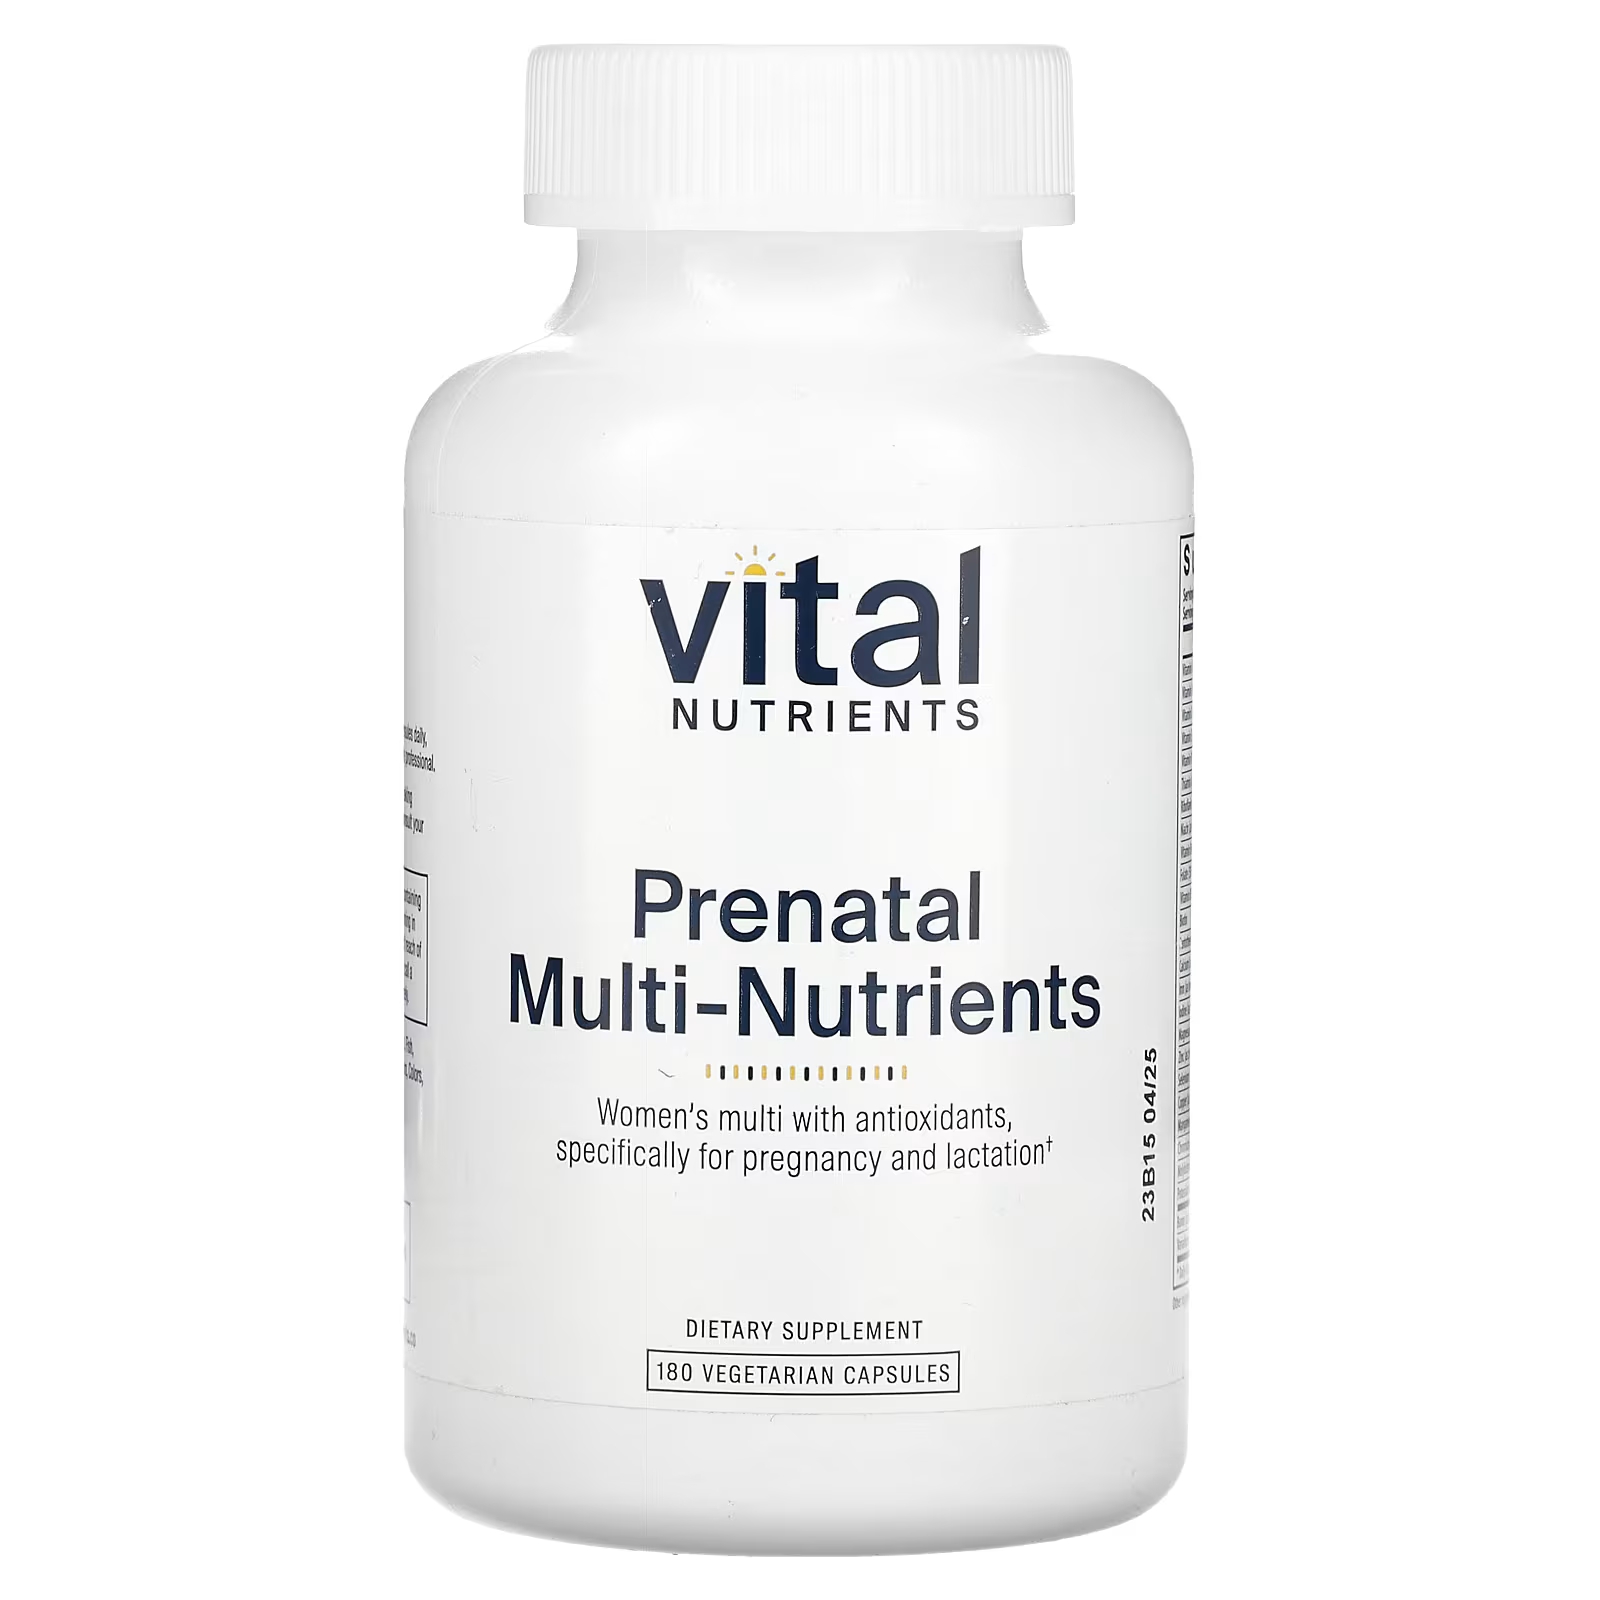 Пищевая добавка Vital Nutrients Prenatal Multi-Nutrients, 180 капсул витамины антиоксиданты минералы awochactive хром пиколината